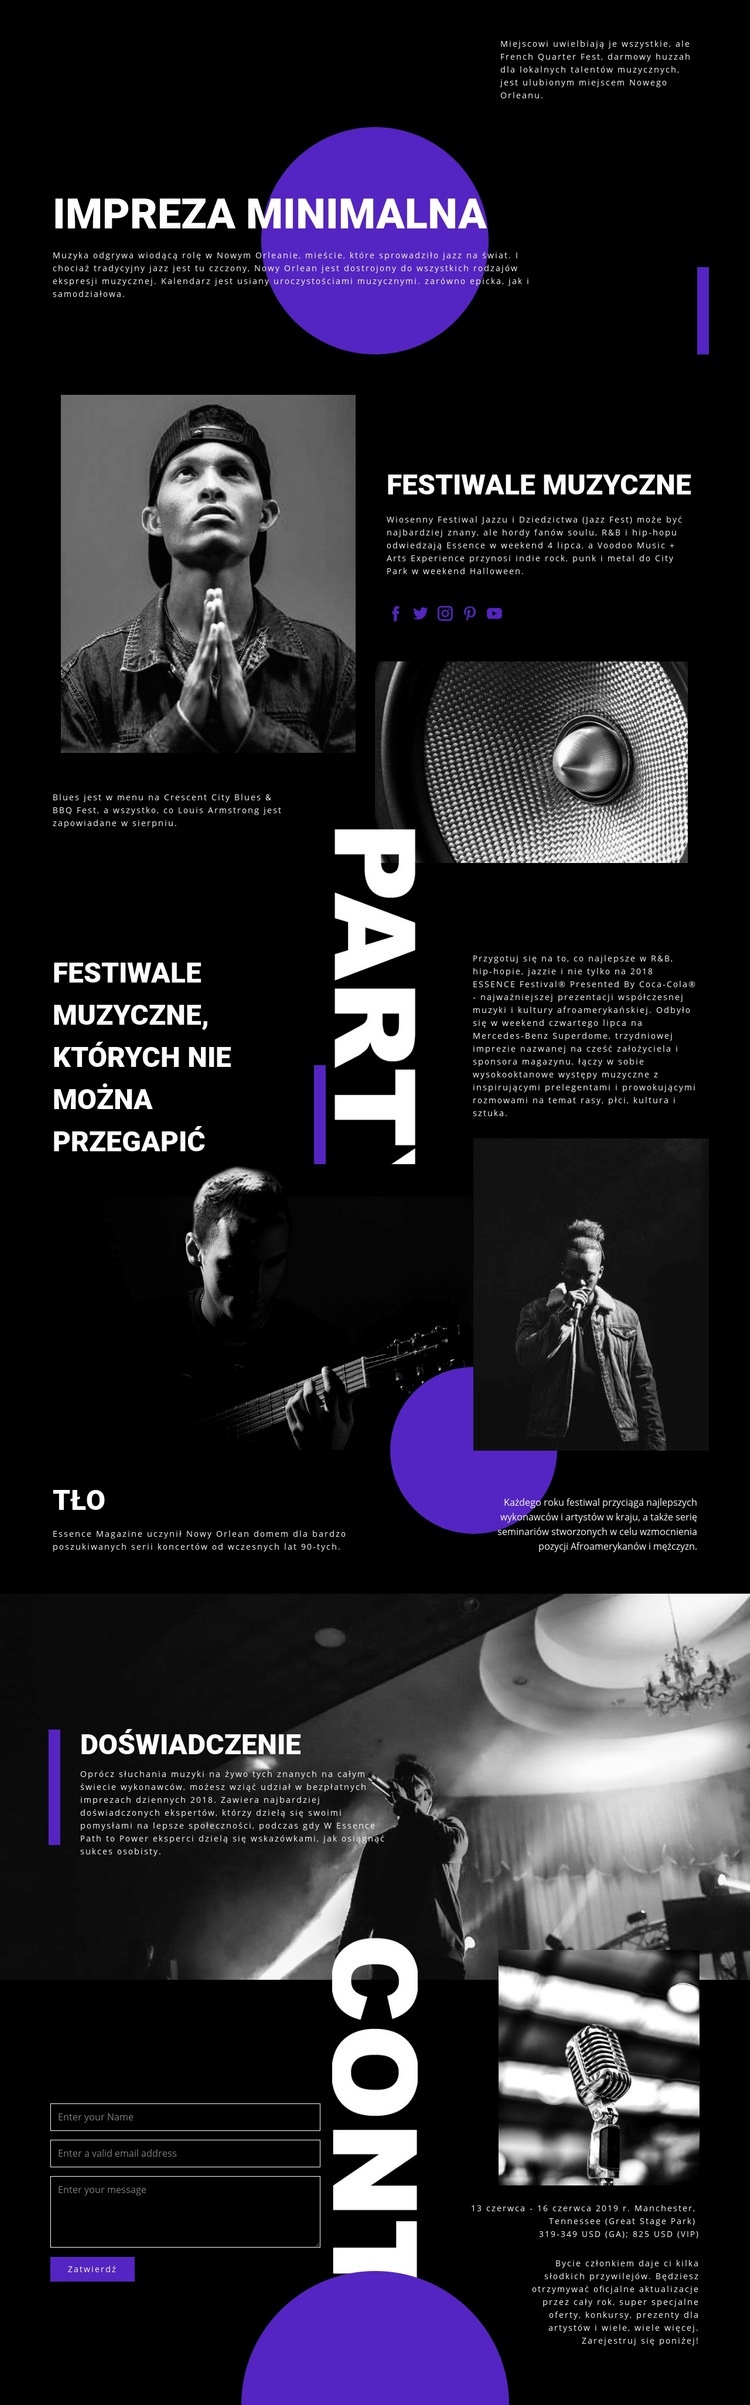 Festiwal Muzyczny Projekt strony internetowej